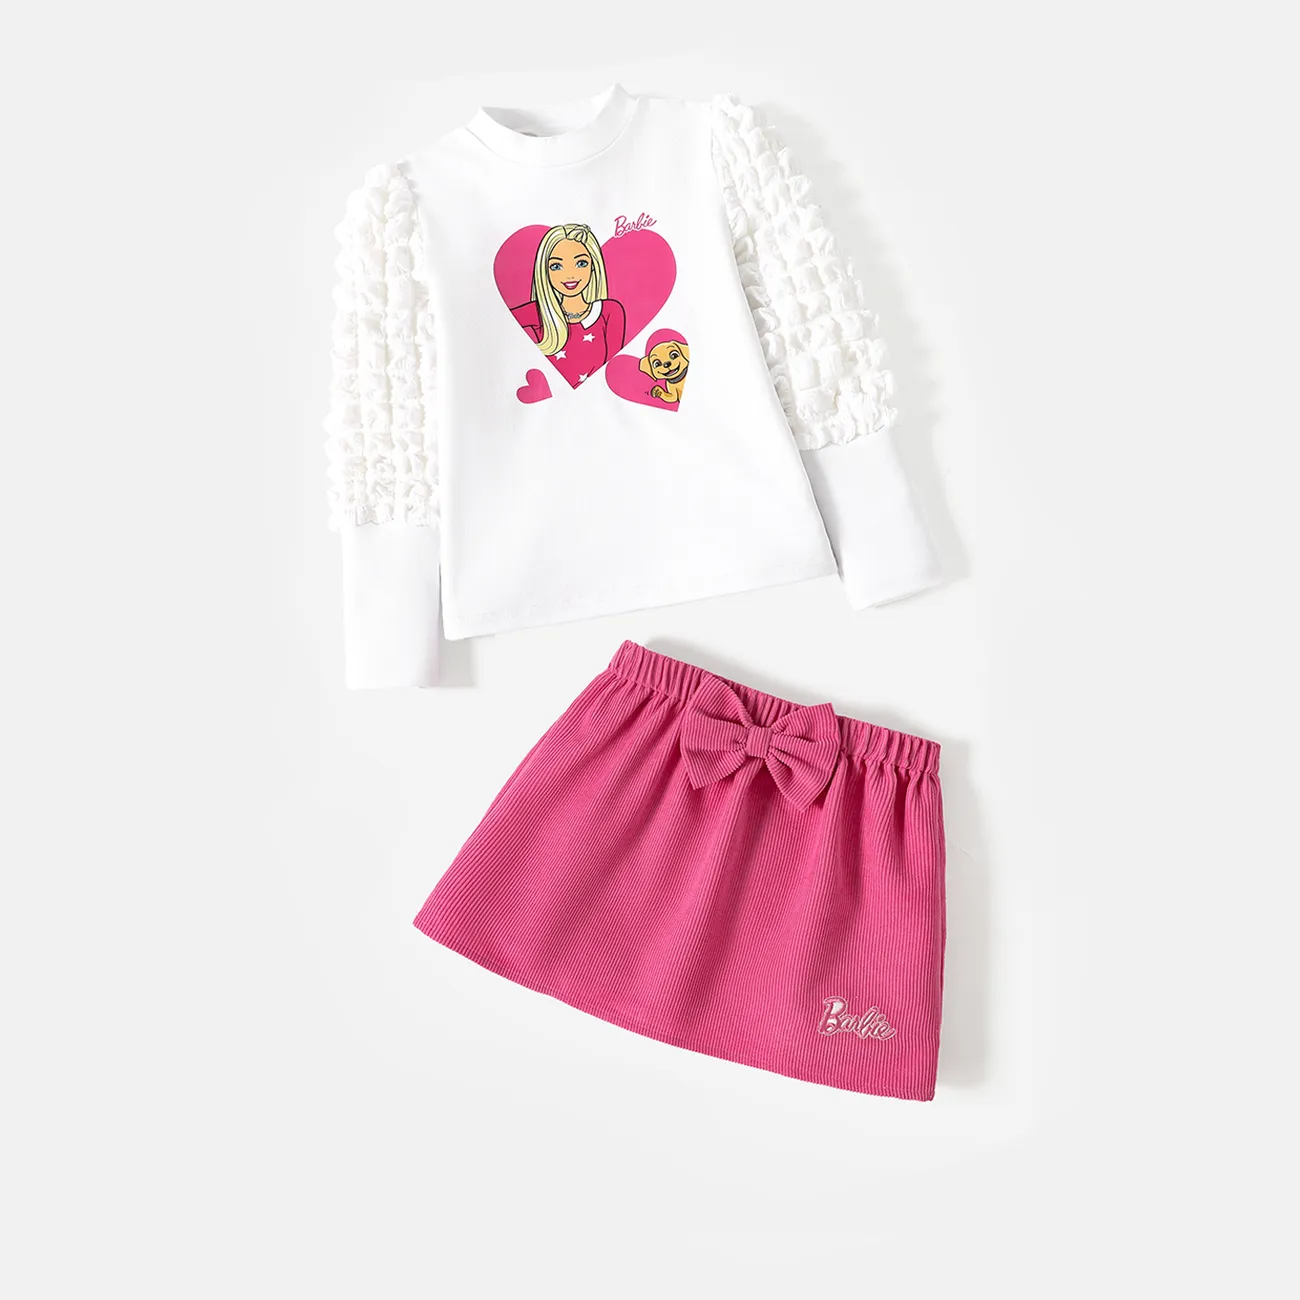 Barbie 2 unidades Criança Menina Costuras de tecido Bonito Fato saia e casaco Branco big image 1